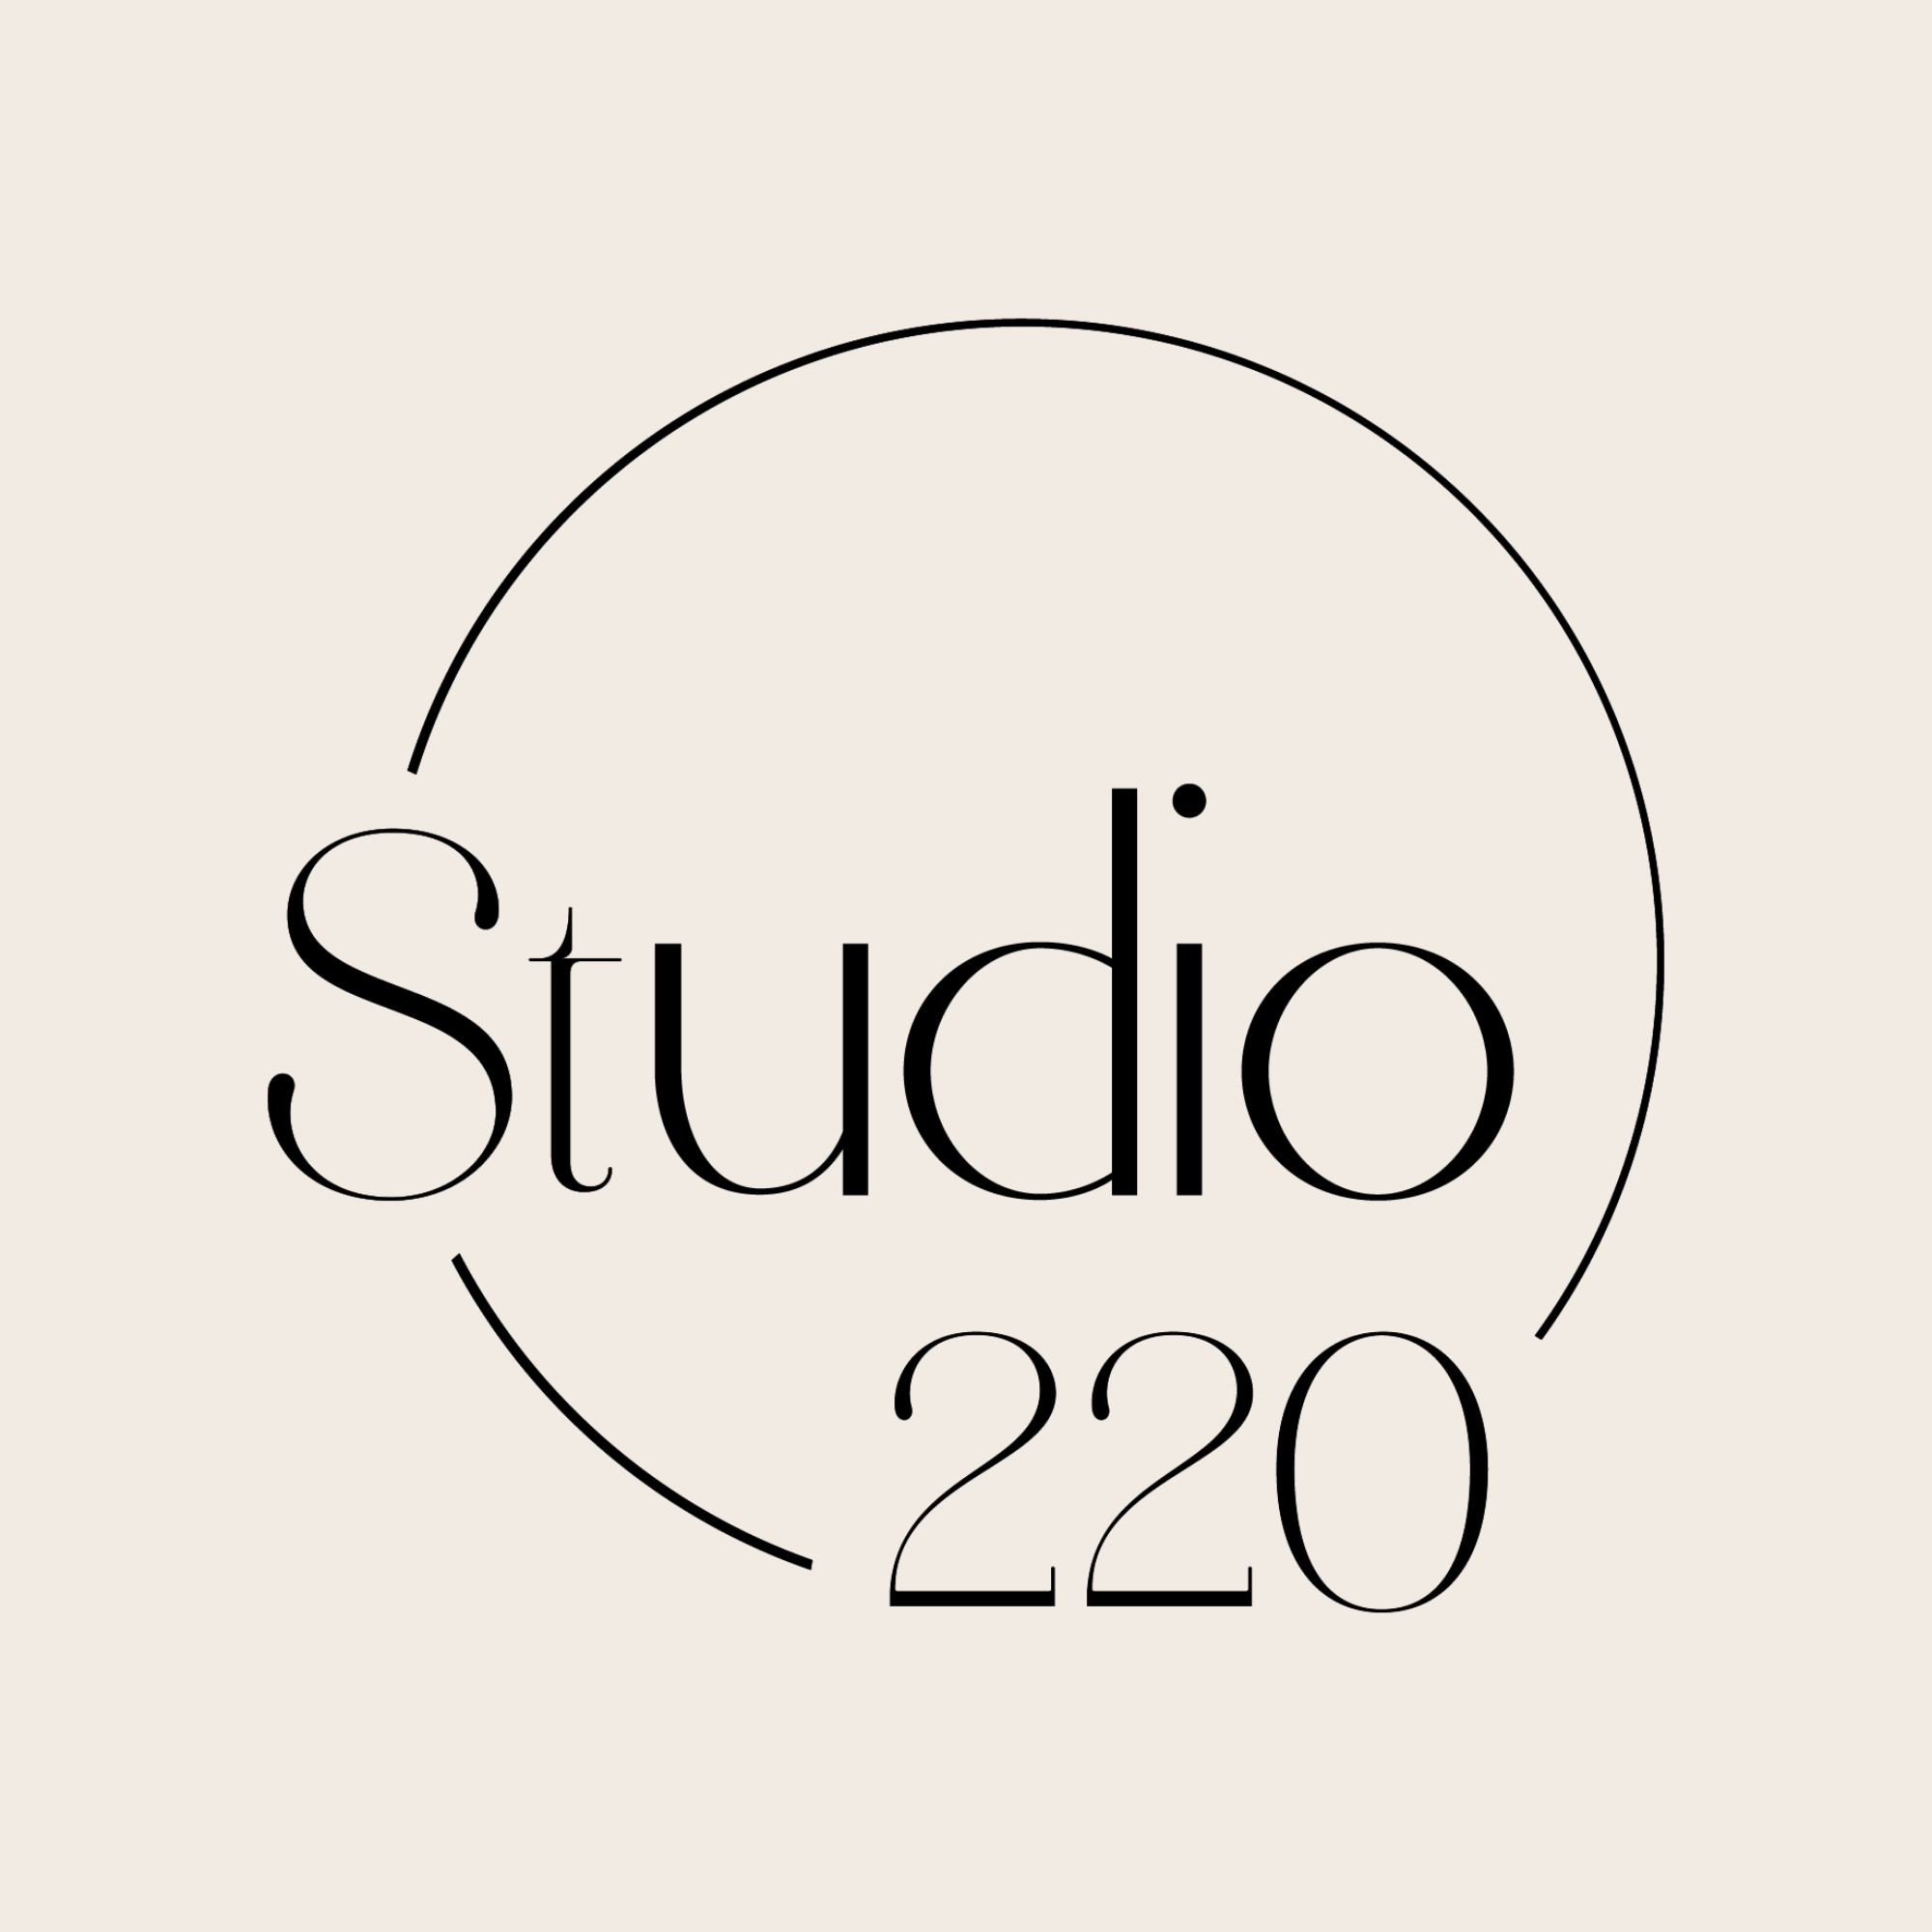 STUDIO 220